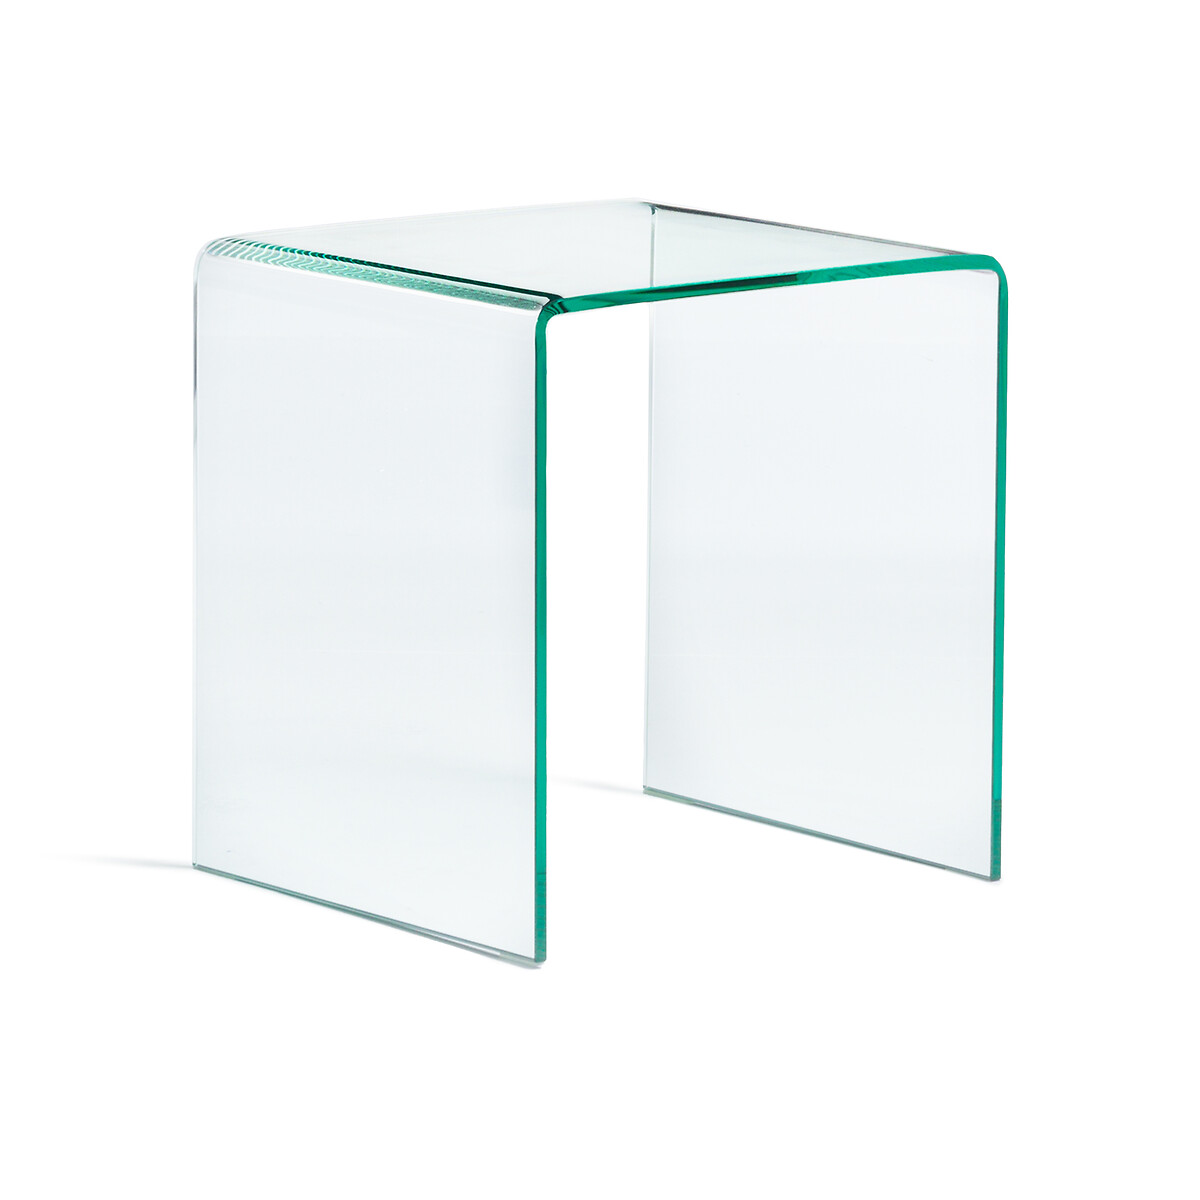 Столик прикроватный из закаленного стекла Joan единый размер зеленый столы журнальные joan единый размер другие